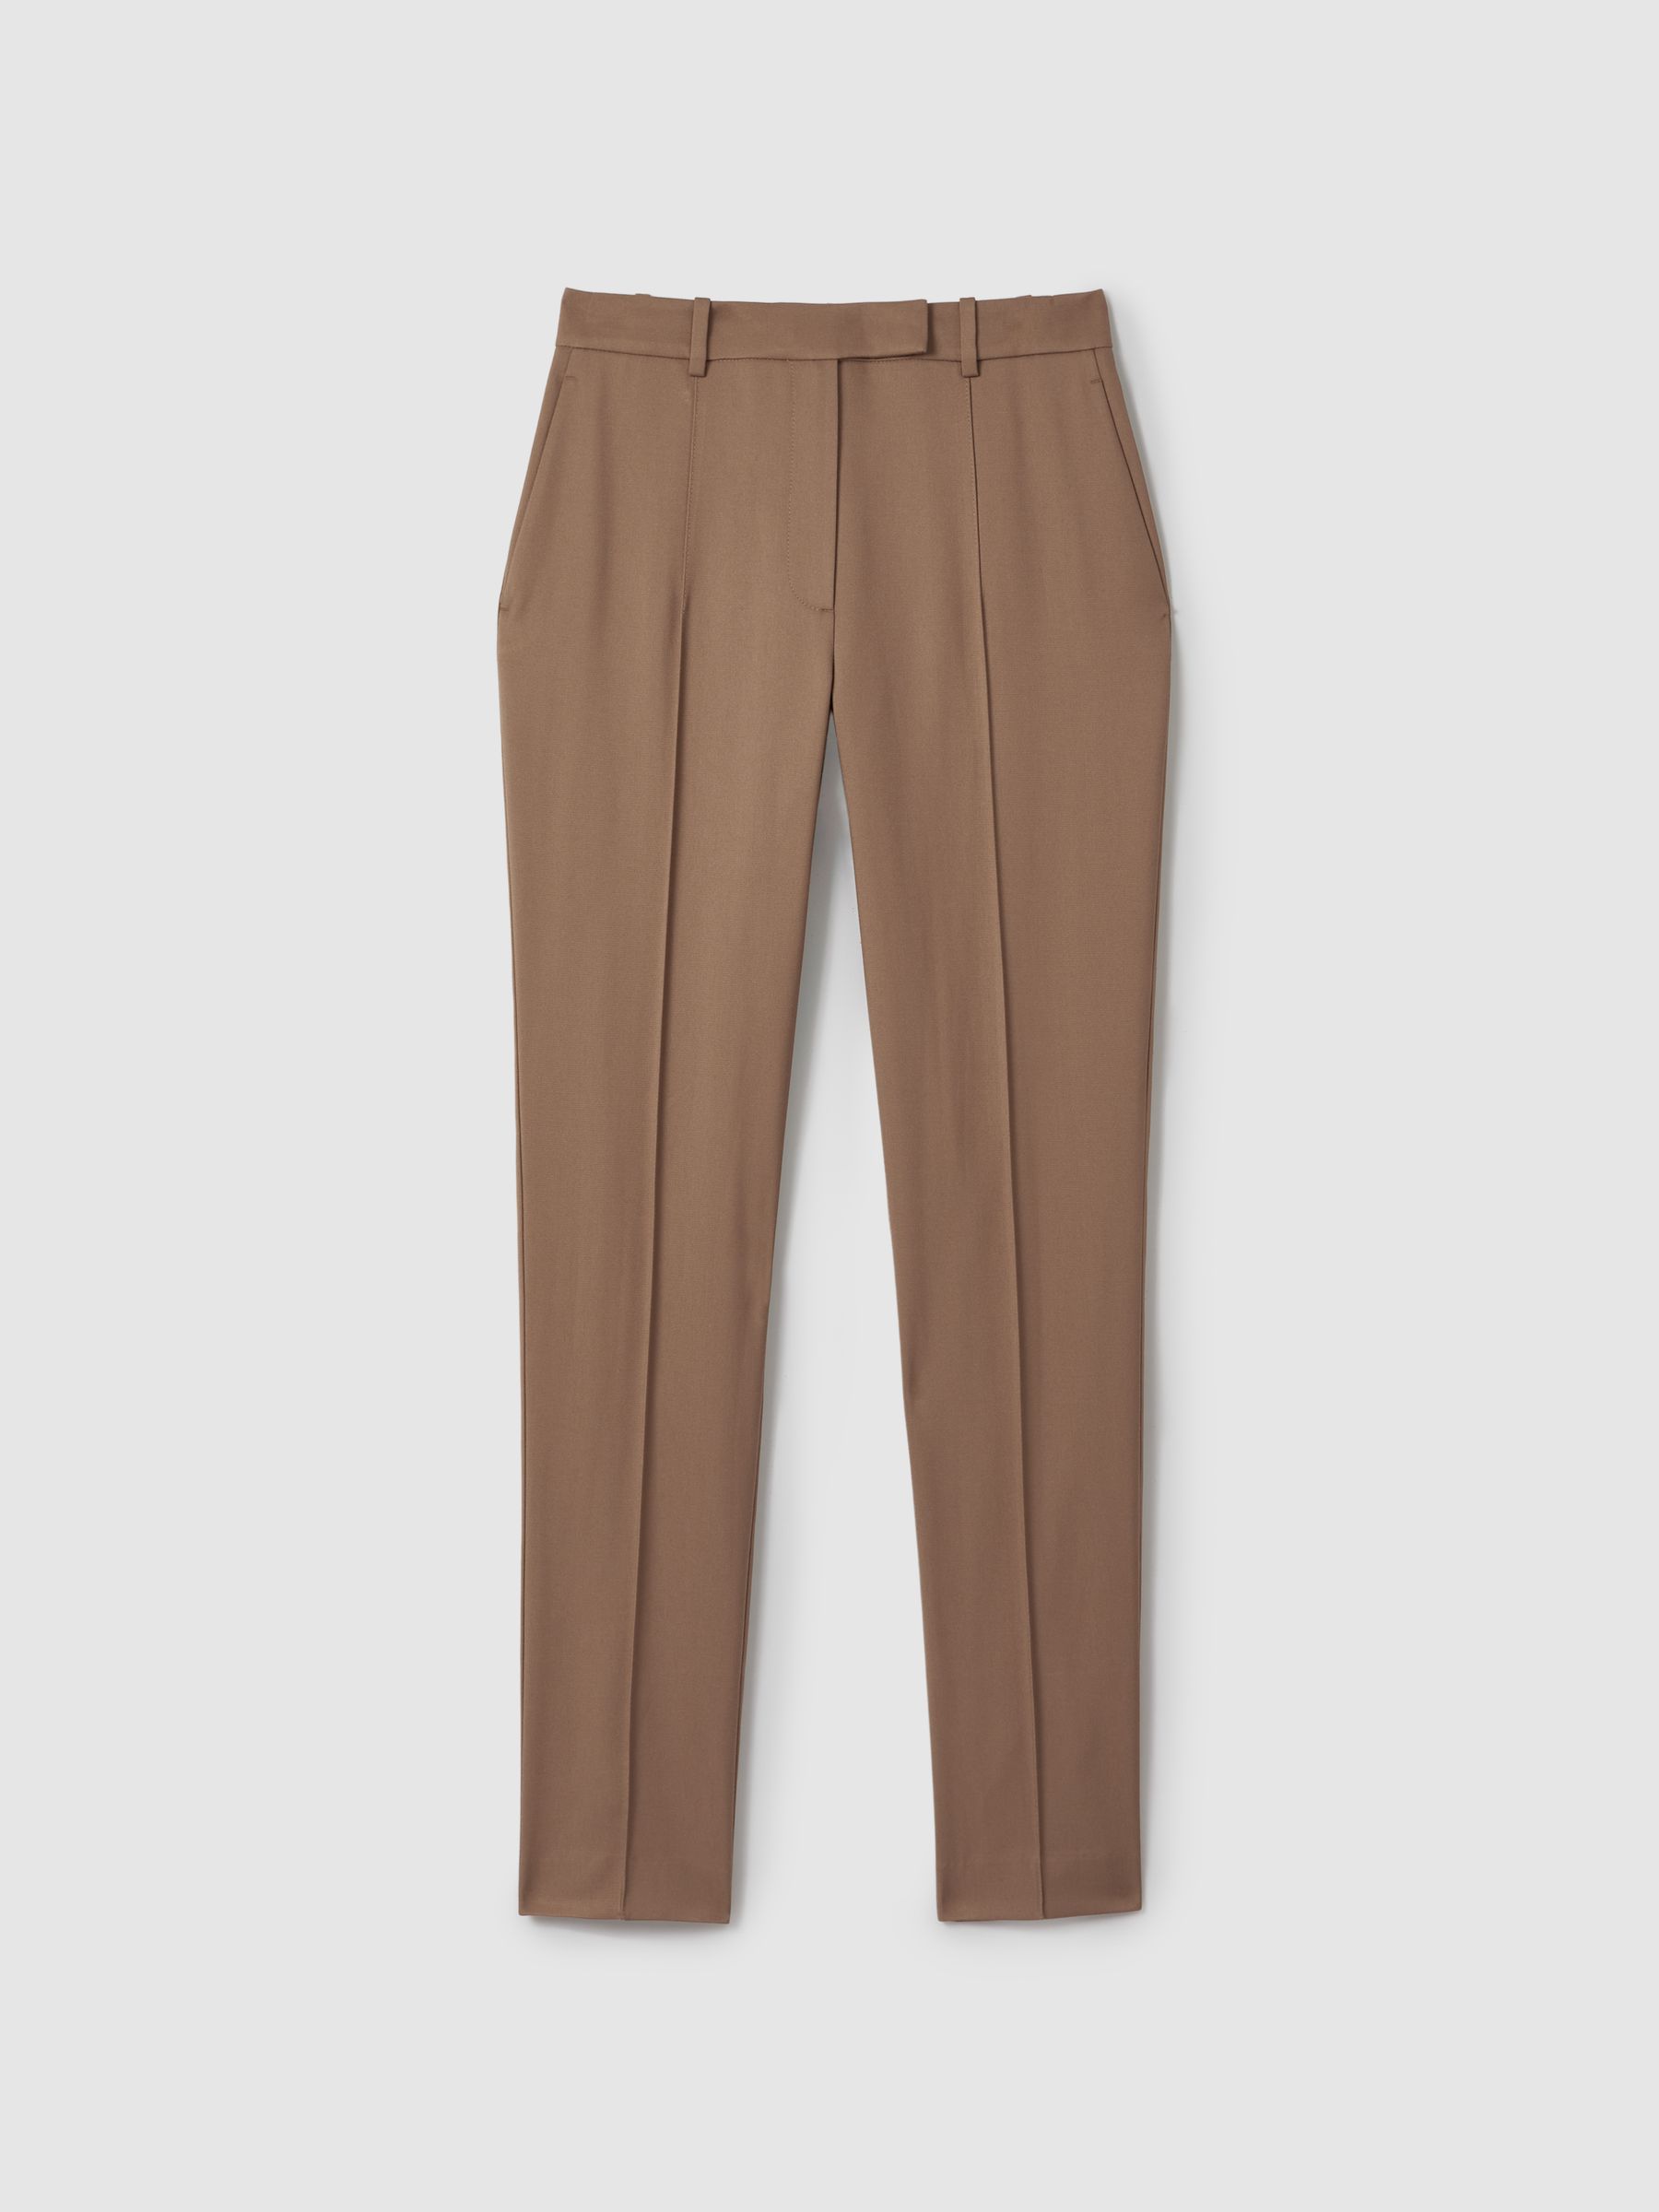 Reiss Wren Slim Fit Suit Trousers - REISS